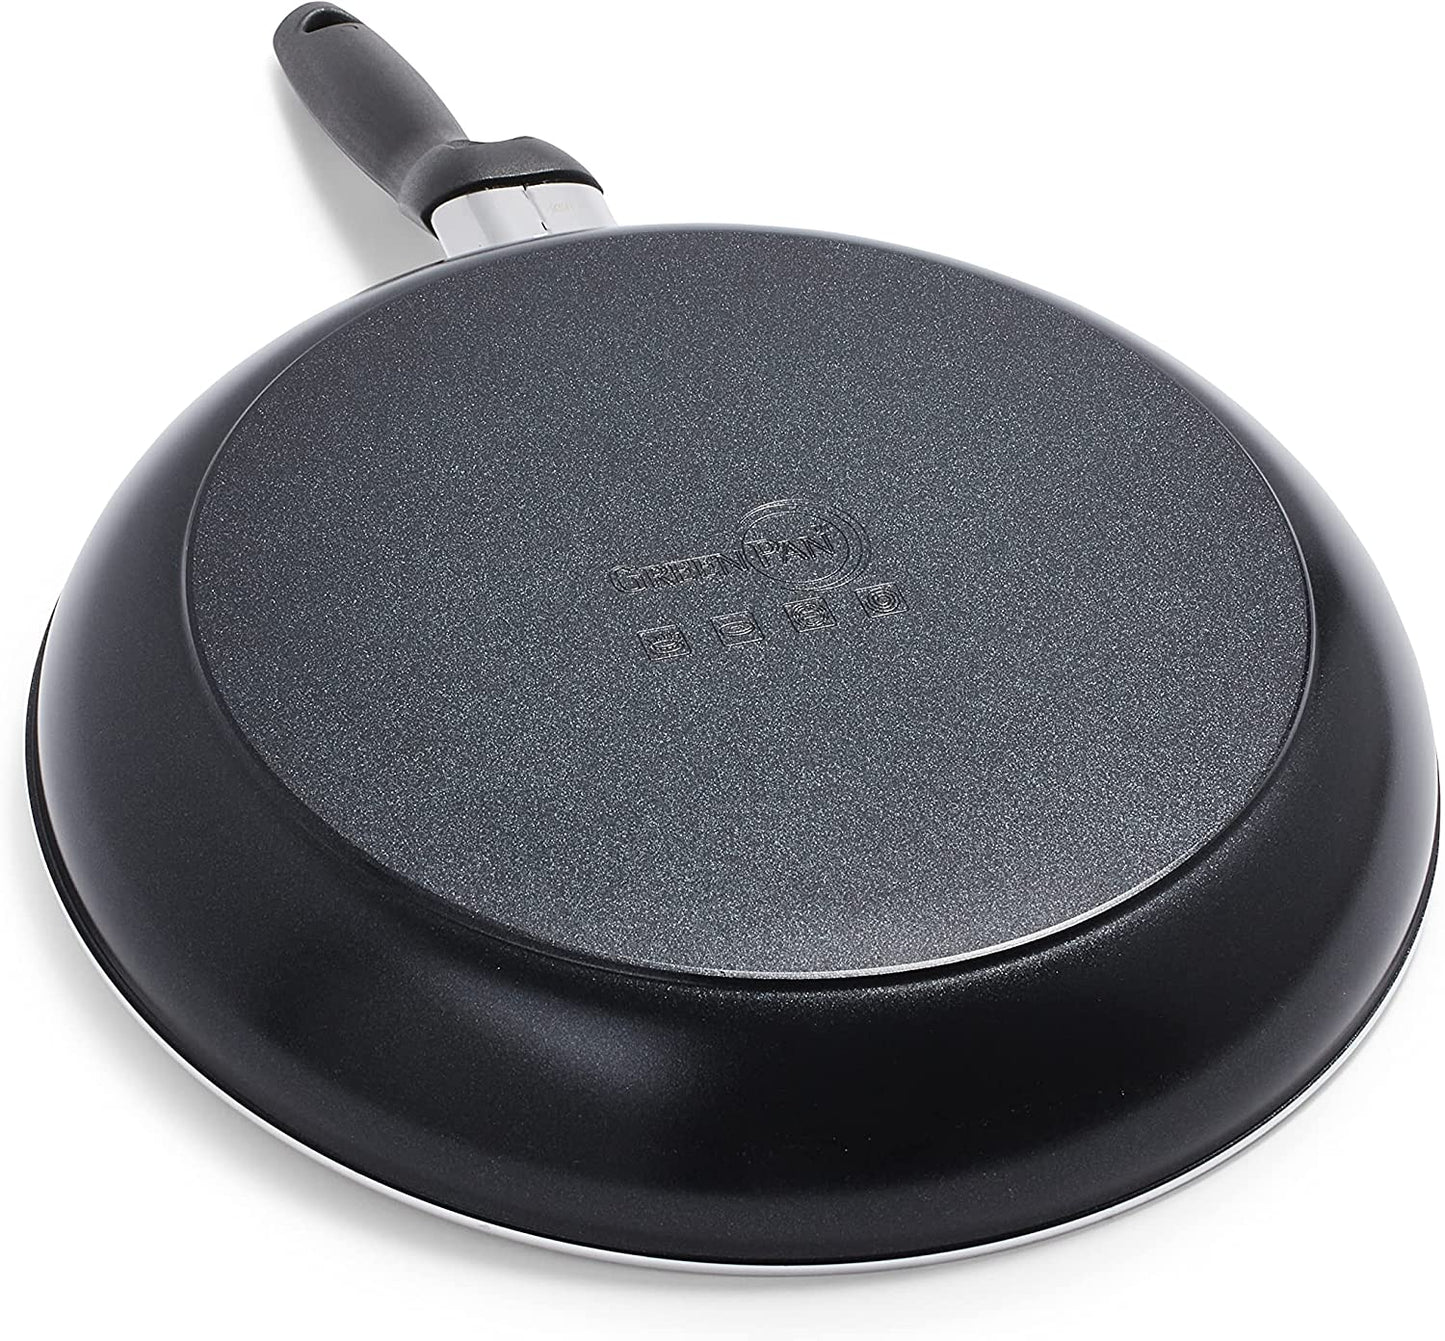 Bottom side of frying pan